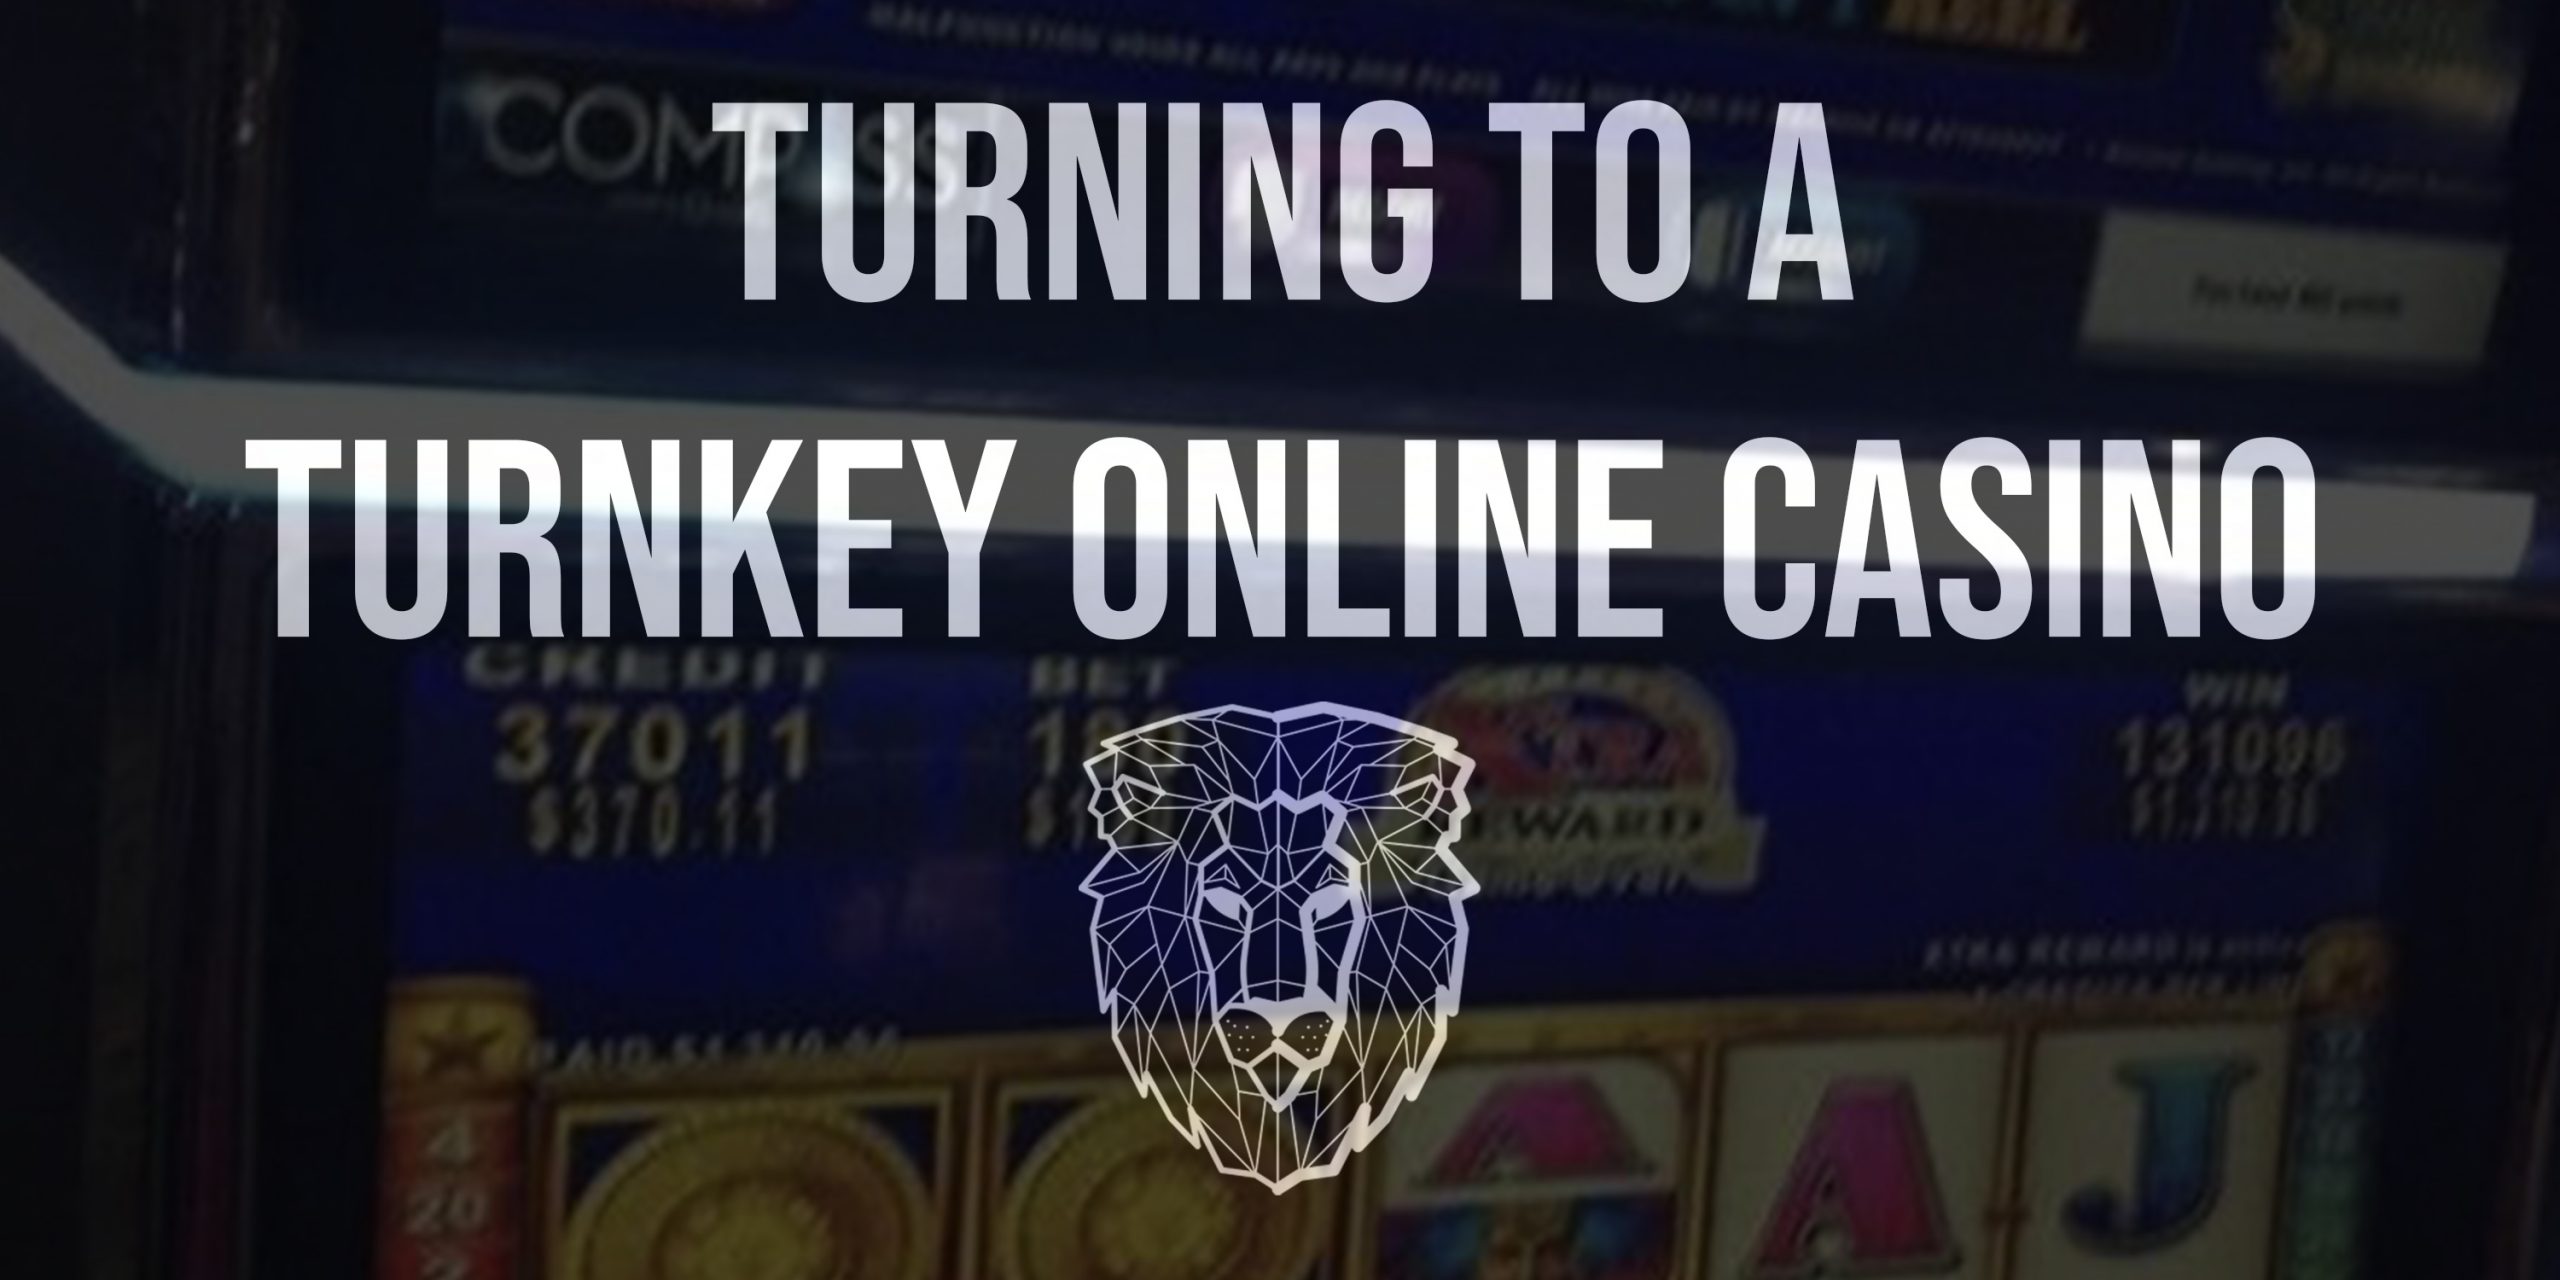 Online system gaminator, turnkey online casino, turnkey casino software